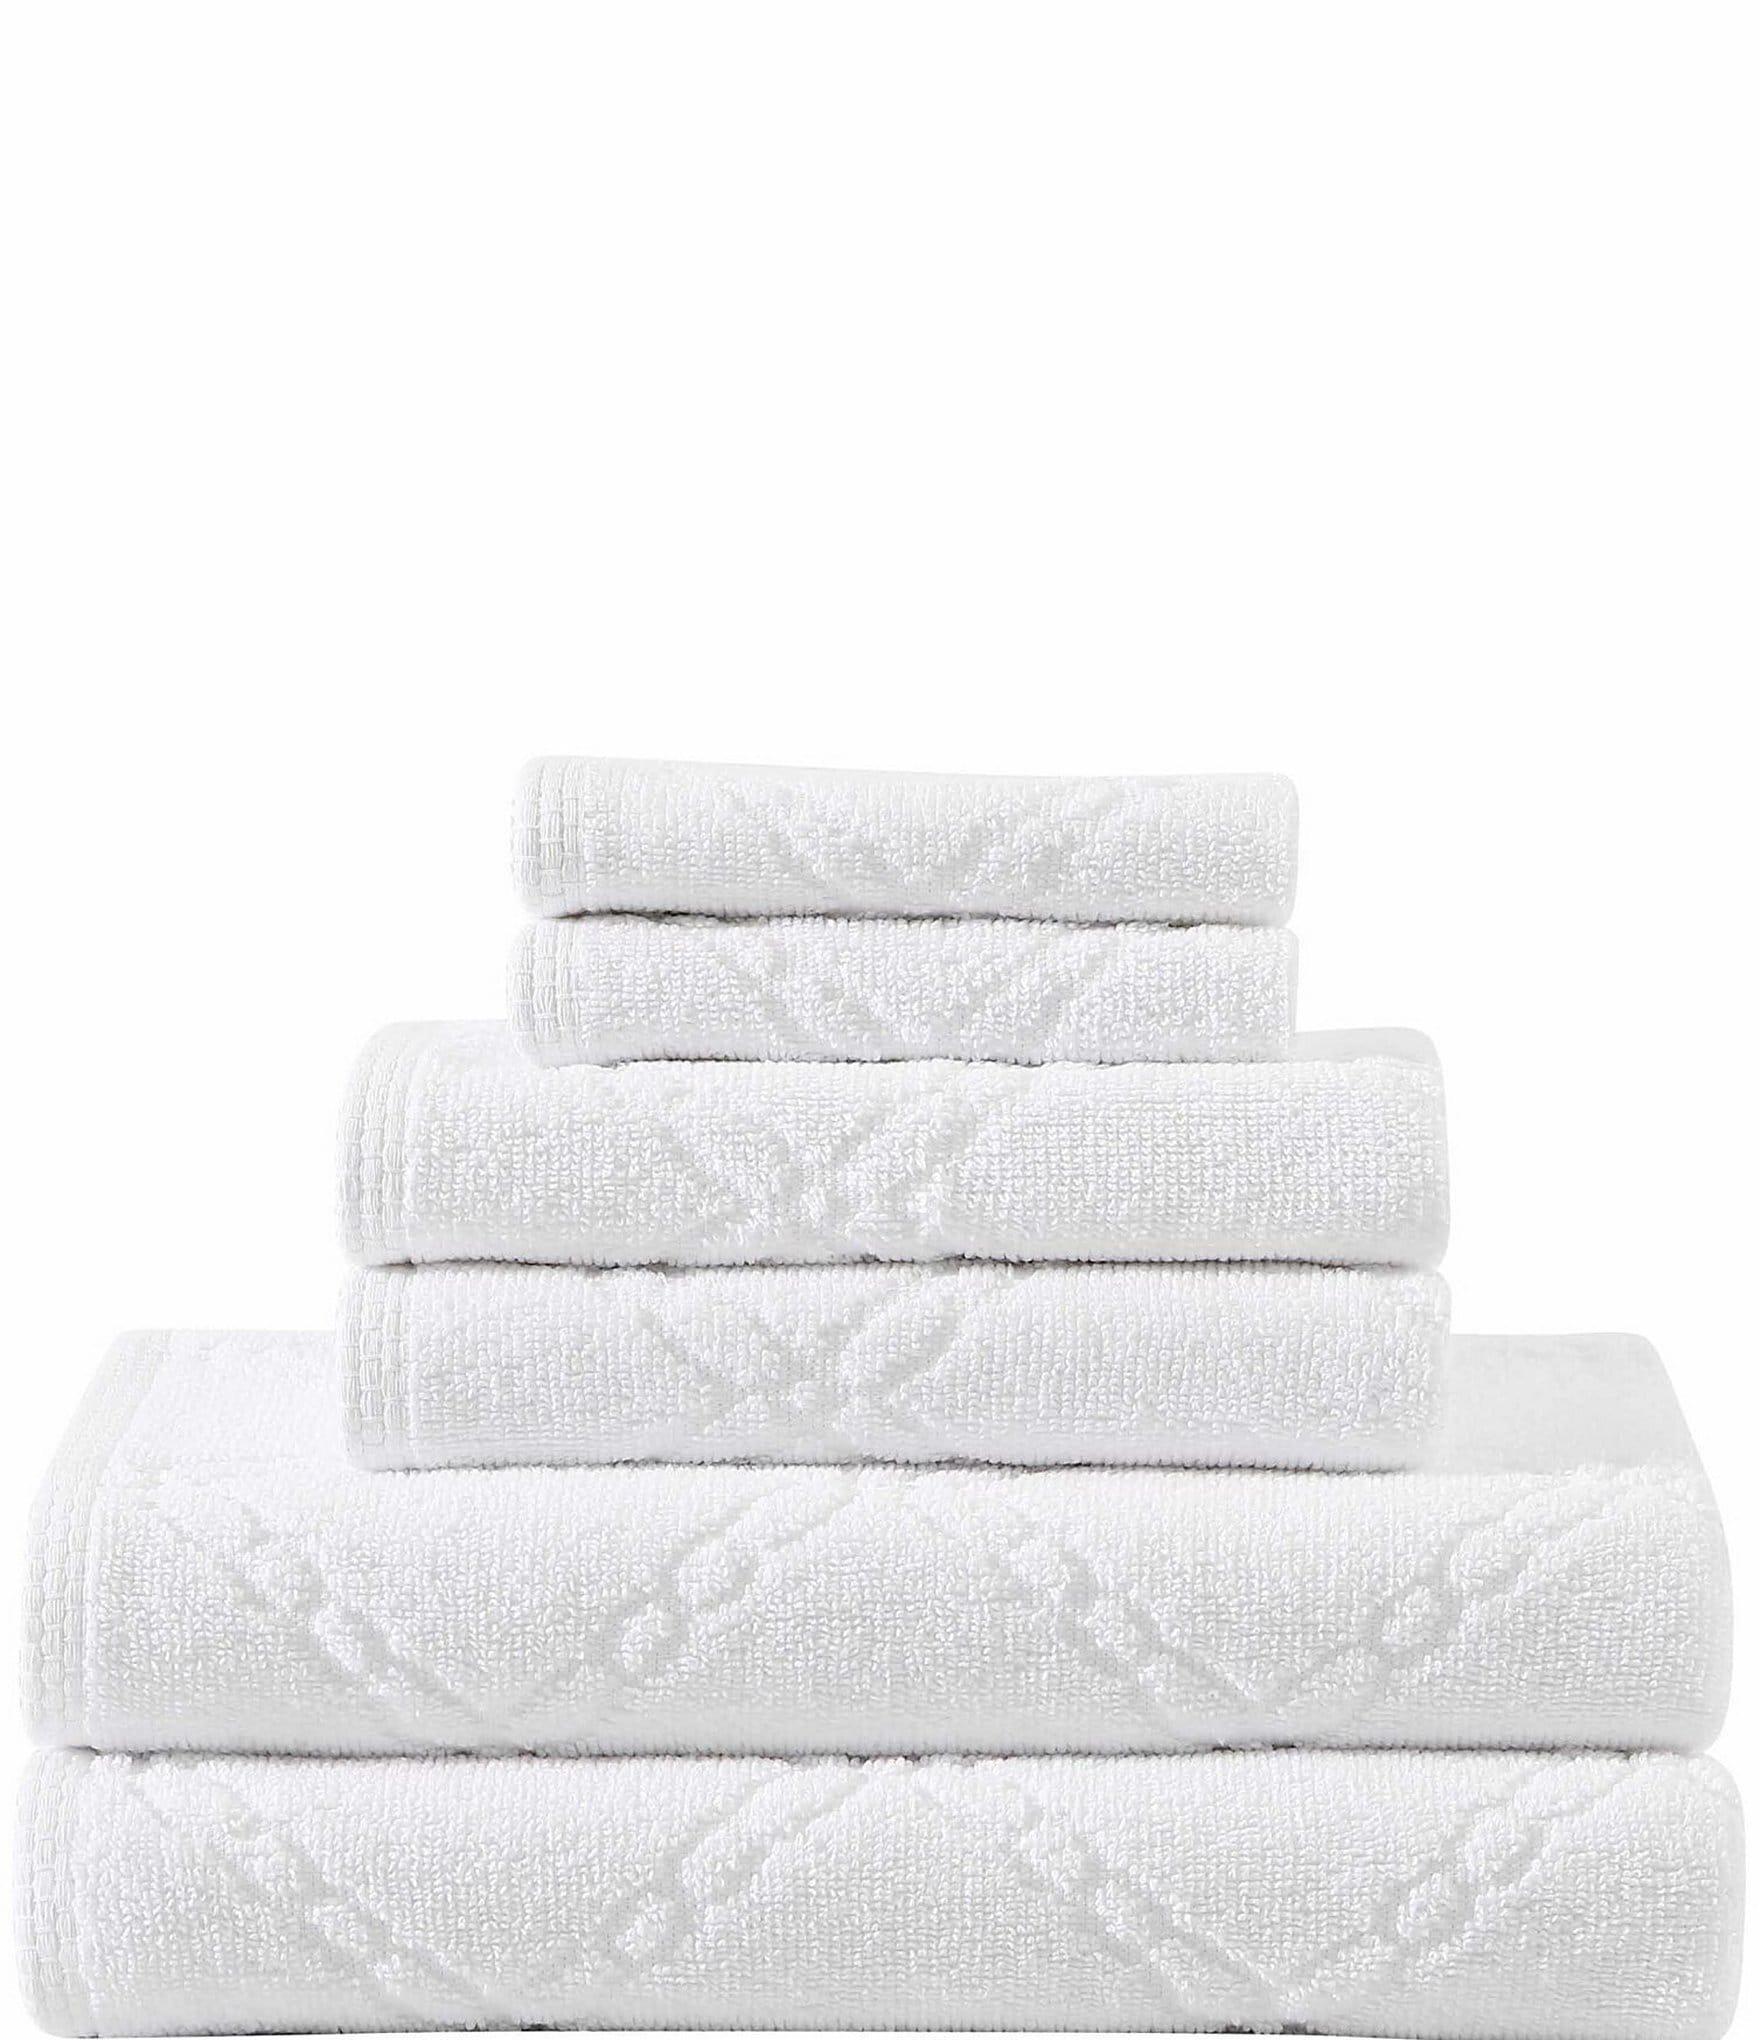 Mainstays 2 Piece Cotton Bath and Hand Towel Set, Buffalo Plaid